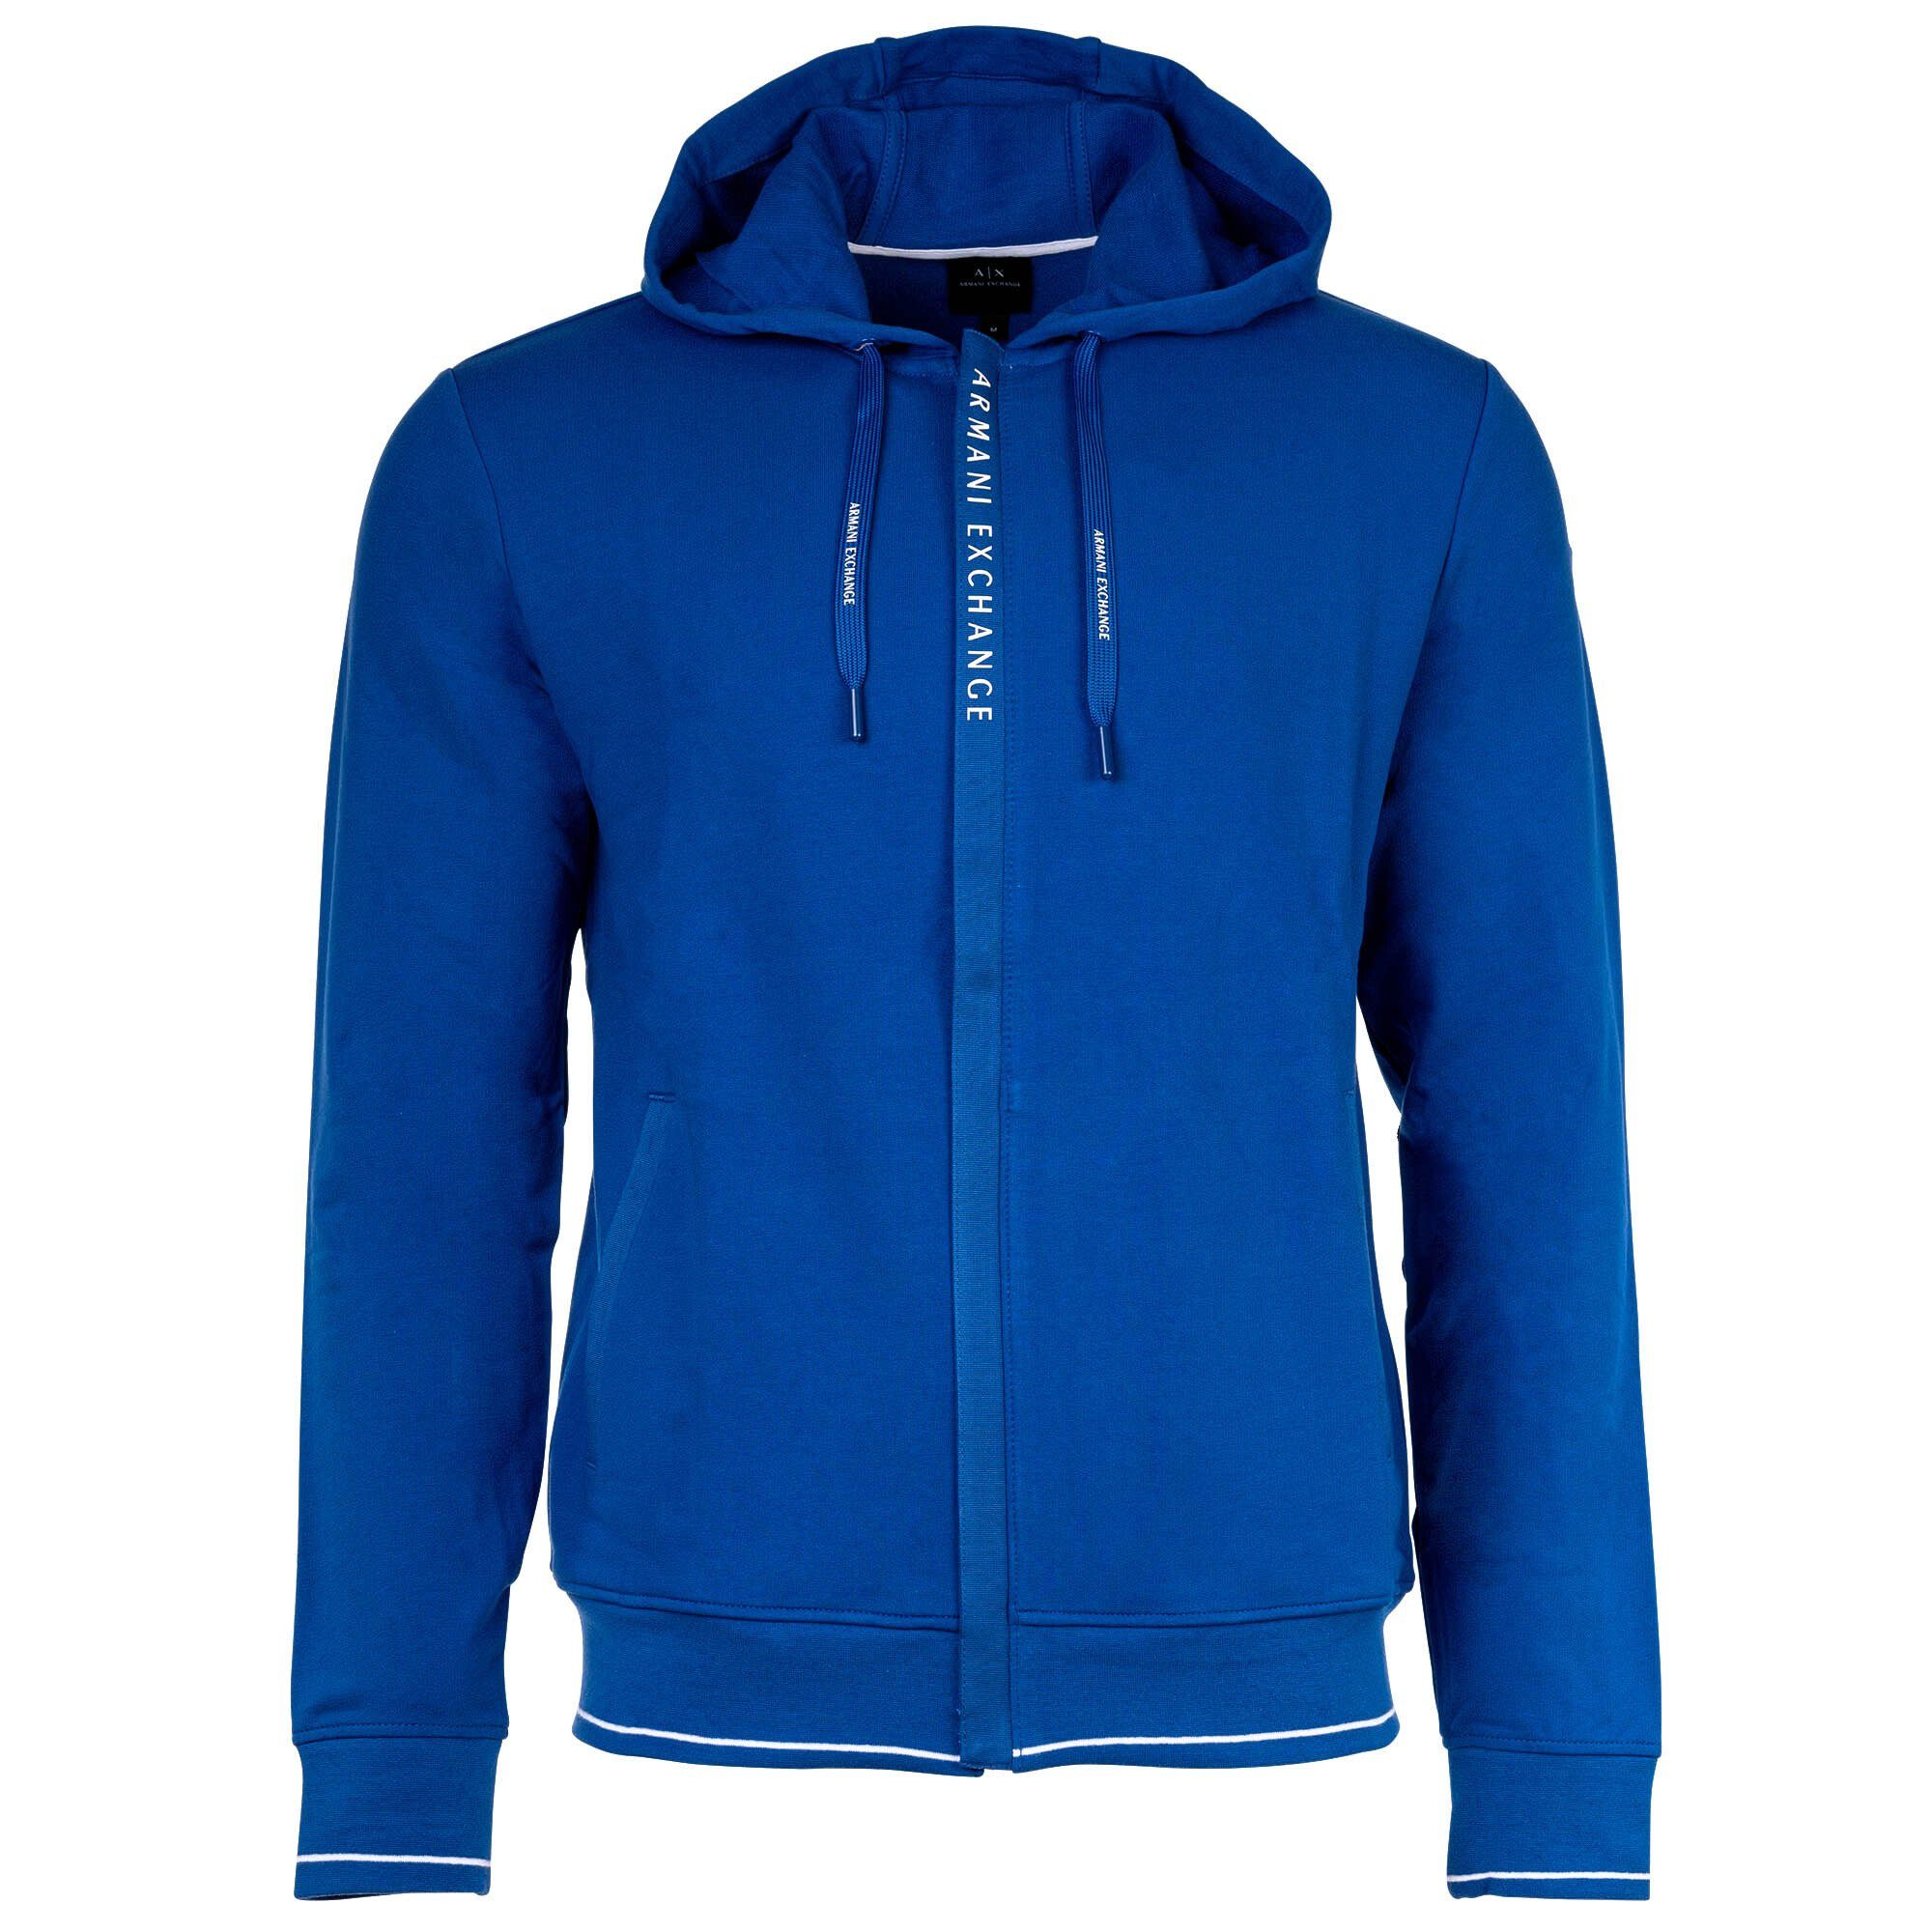 Logo Baumwolle, Herren Jacke - Sweatshirt ARMANI Blau EXCHANGE Sweatshirtjacke,